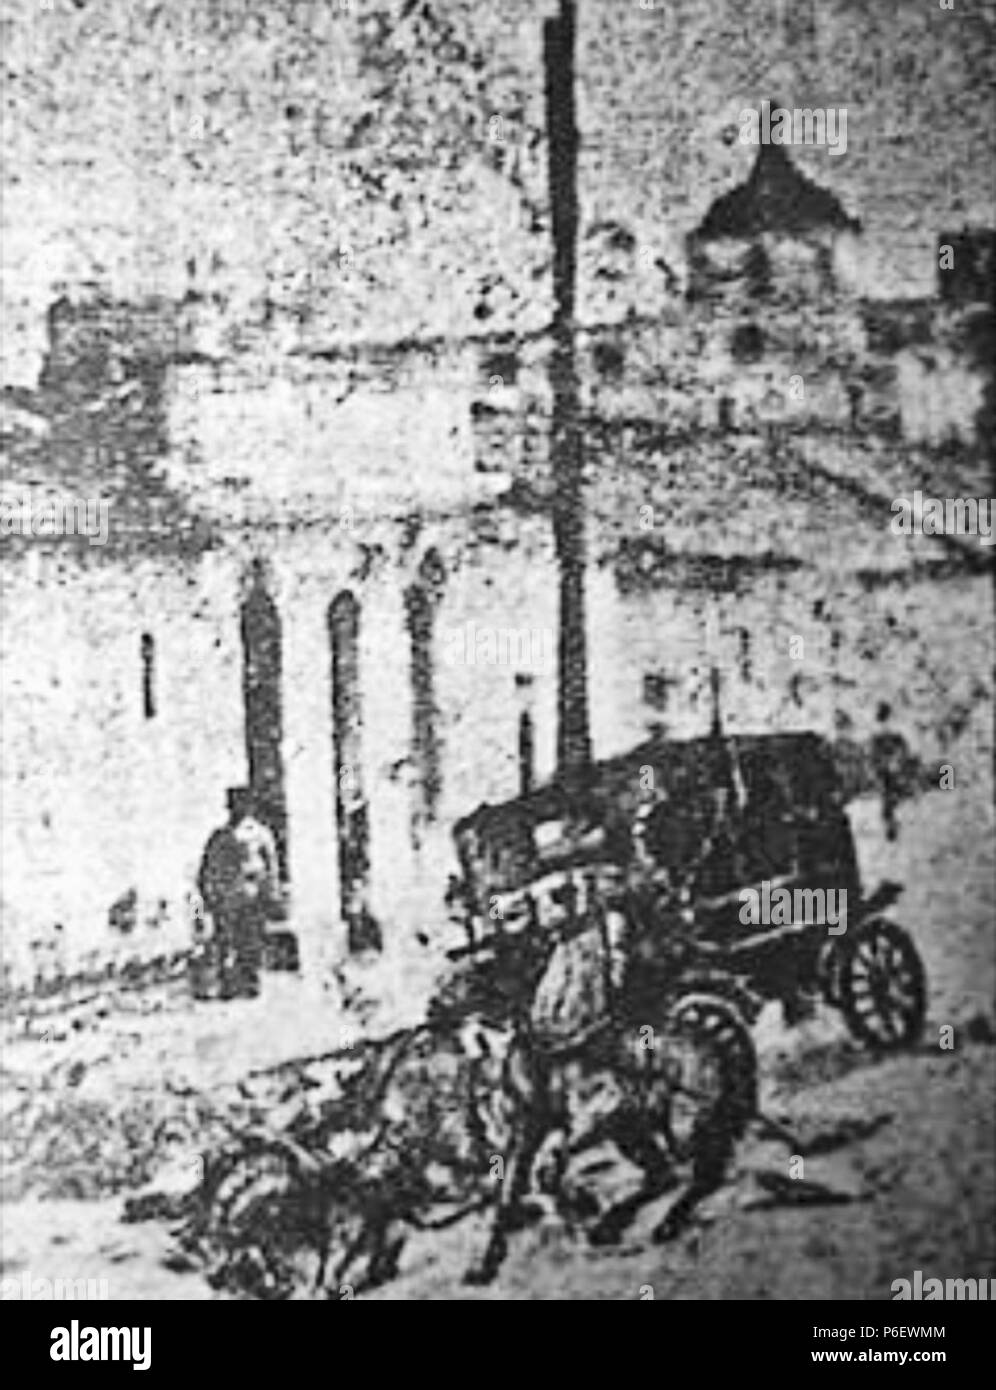 Español: Carruaje del presidente Manuel Estrada Cabrera tras el atentado de la bomba en 1907. 1907 9 Cabreracarruaje1907 Stock Photo